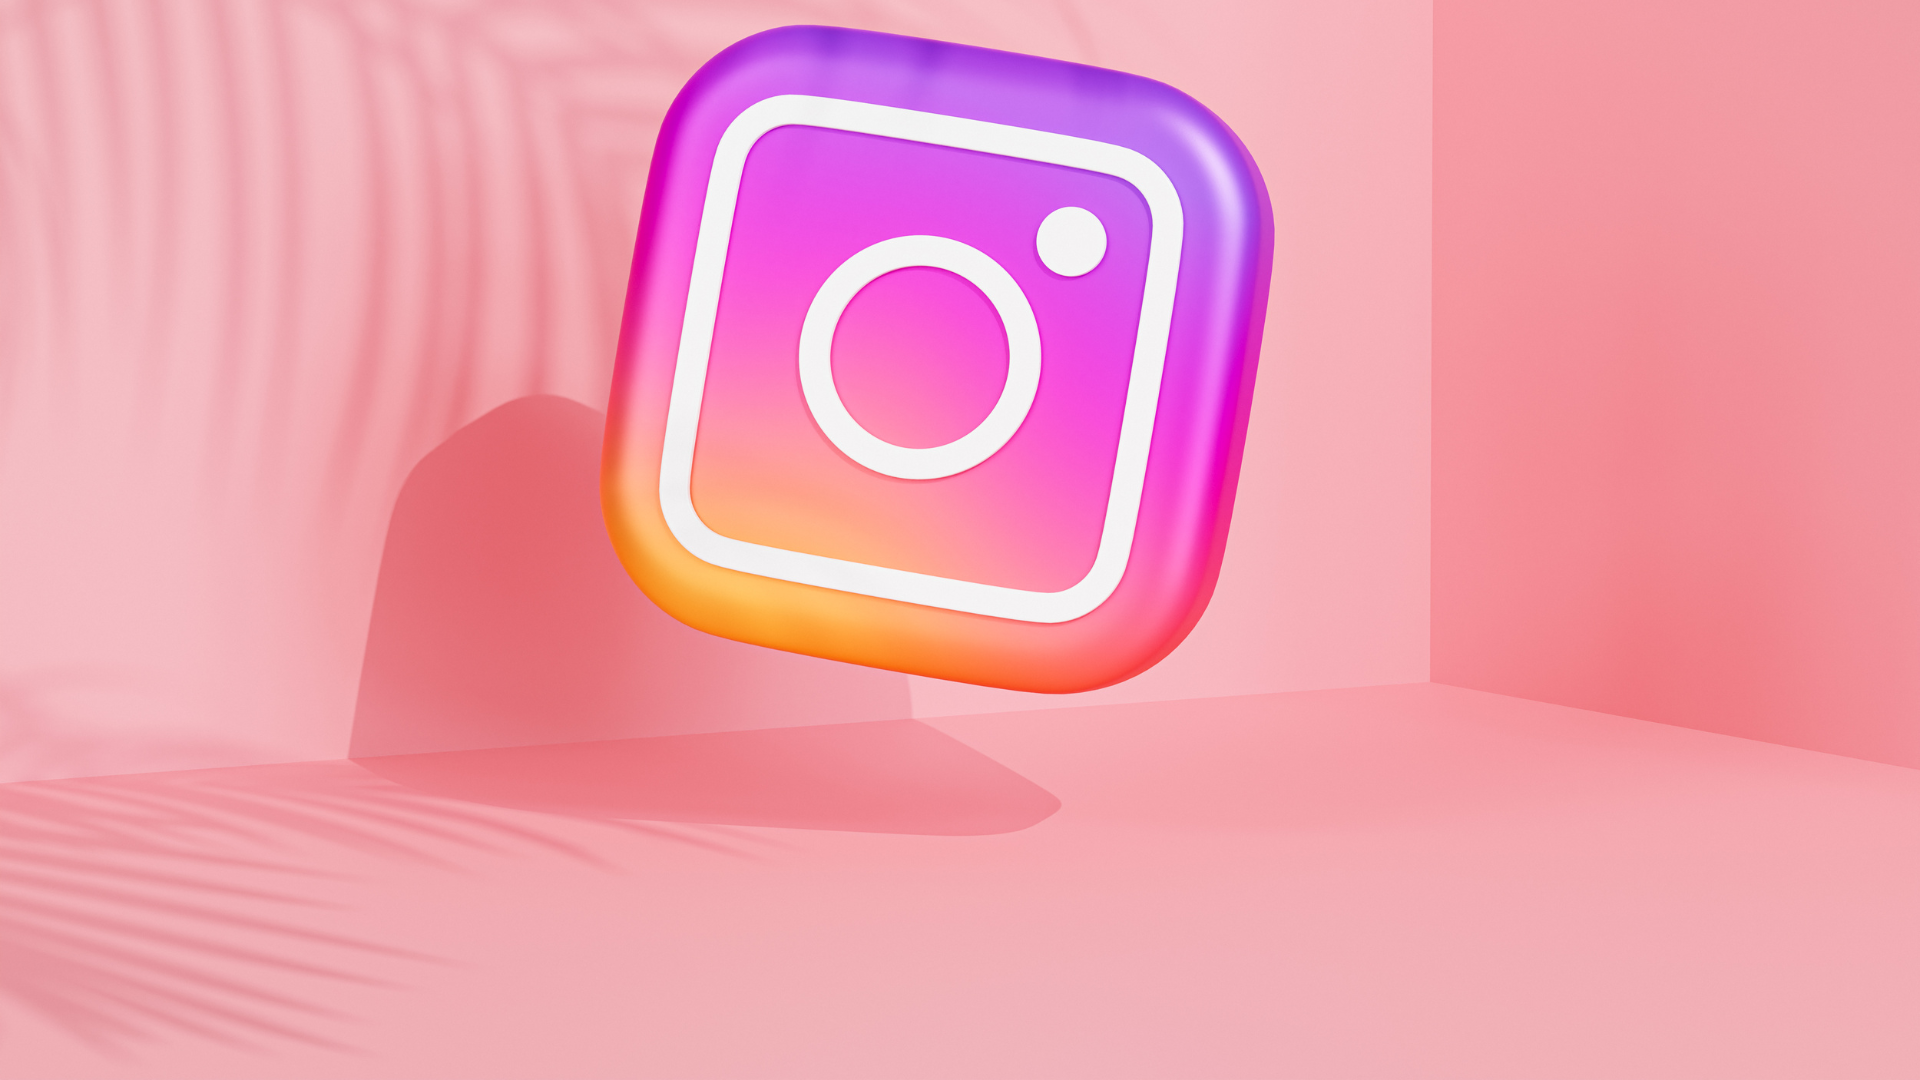 Logo PNG do Instagram tipo ícone de celular.